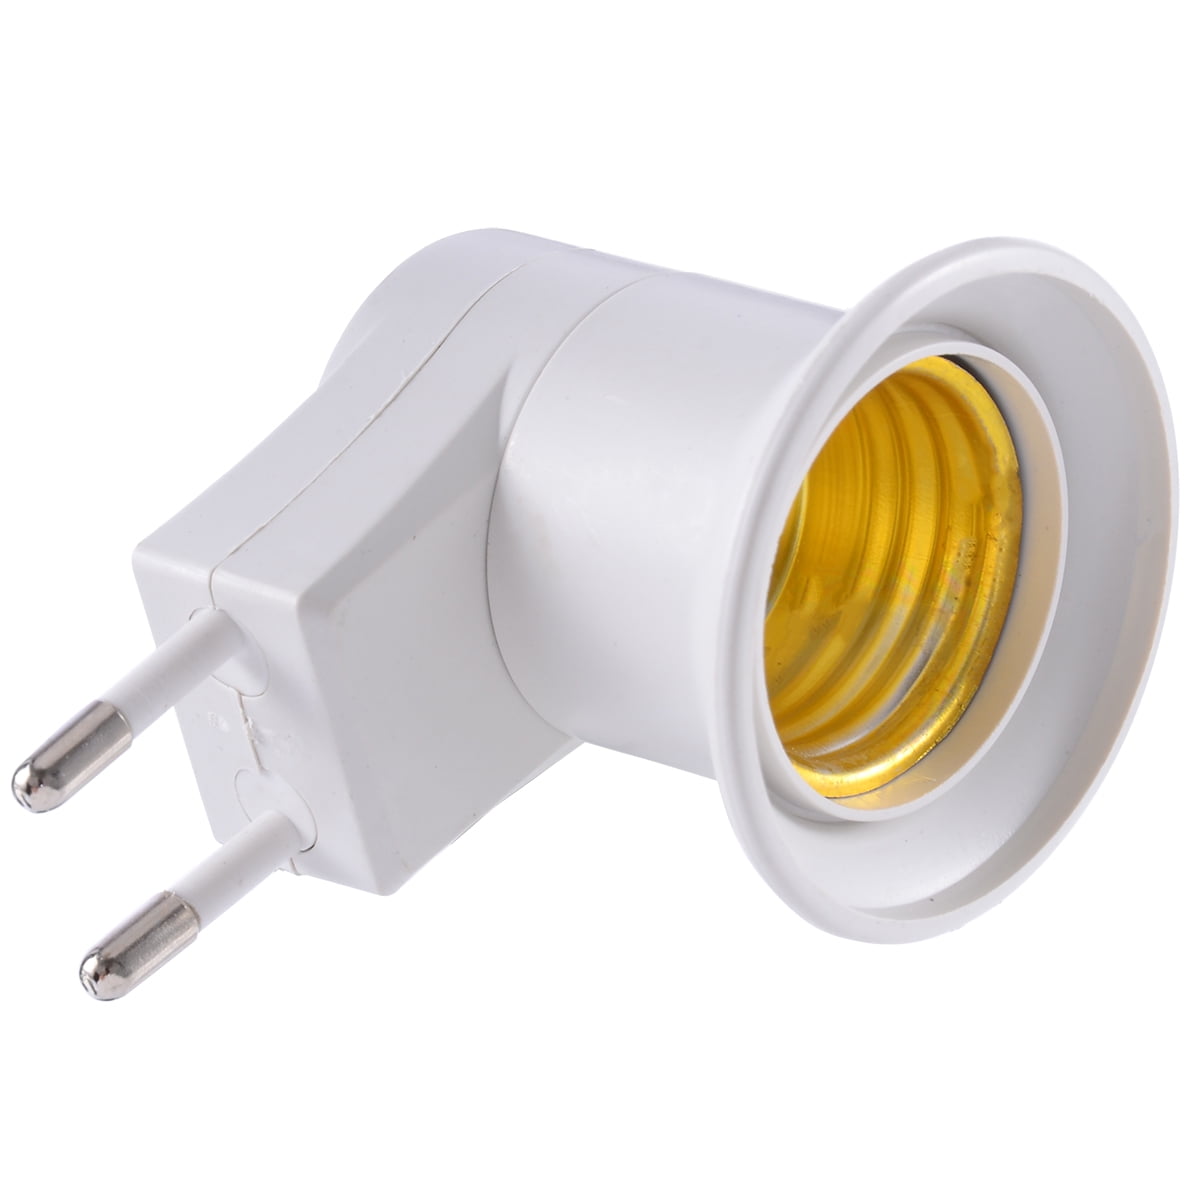 mug Gezond eten Gedachte 3pcs E27 LED Light Lamp Bulbs Socket Base Holder EU Plug Adapter ON/OFF  Switch Lighting Accessories - Walmart.com